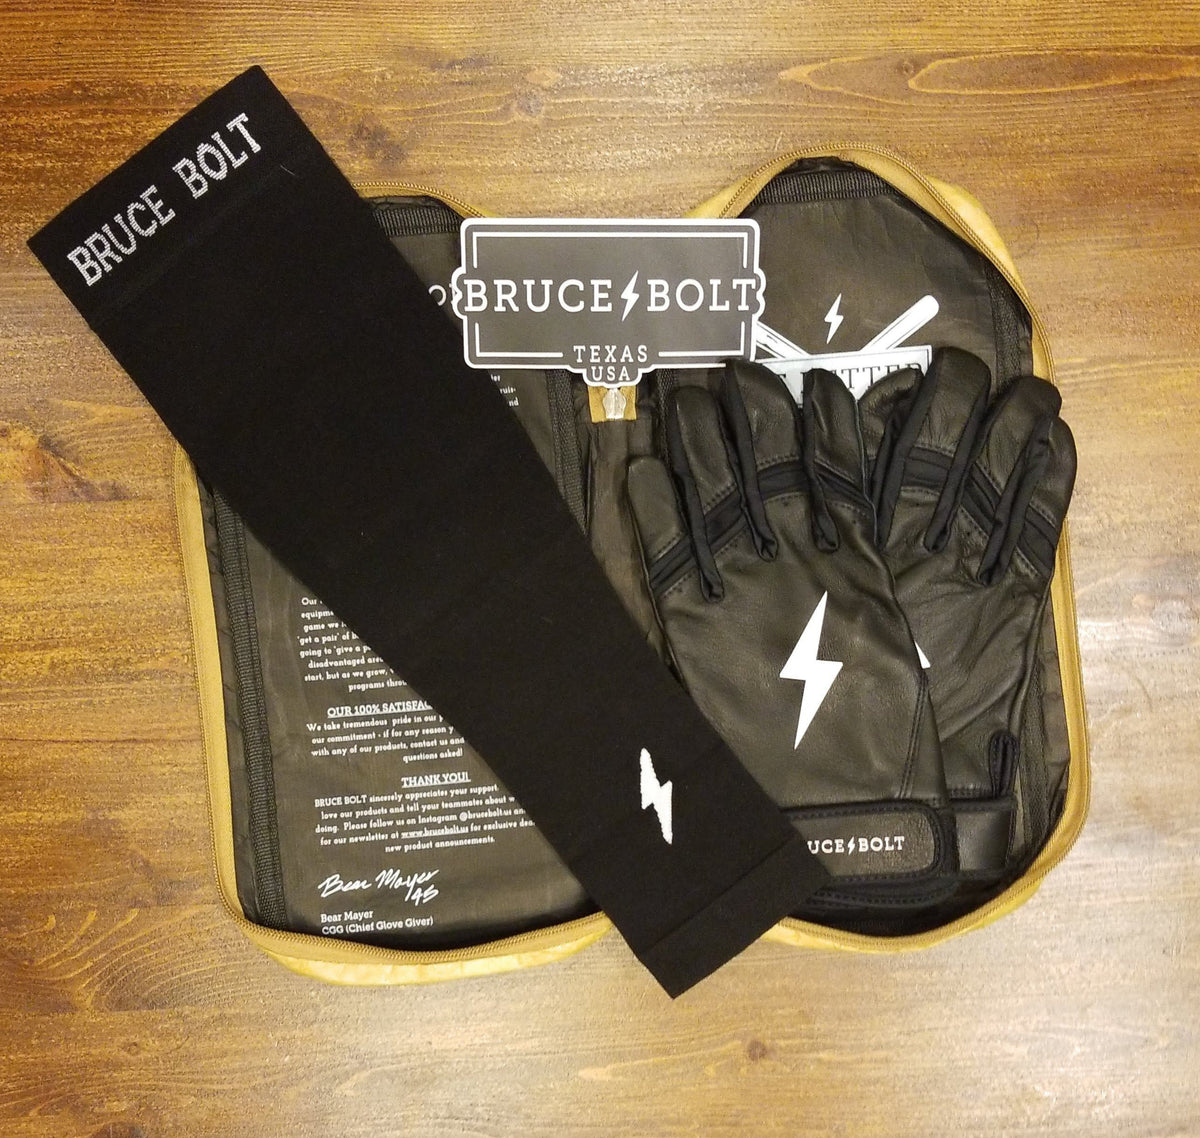 Black Arm Sleeves for Baseball, Basketball, Football, & More – BRUCE BOLT